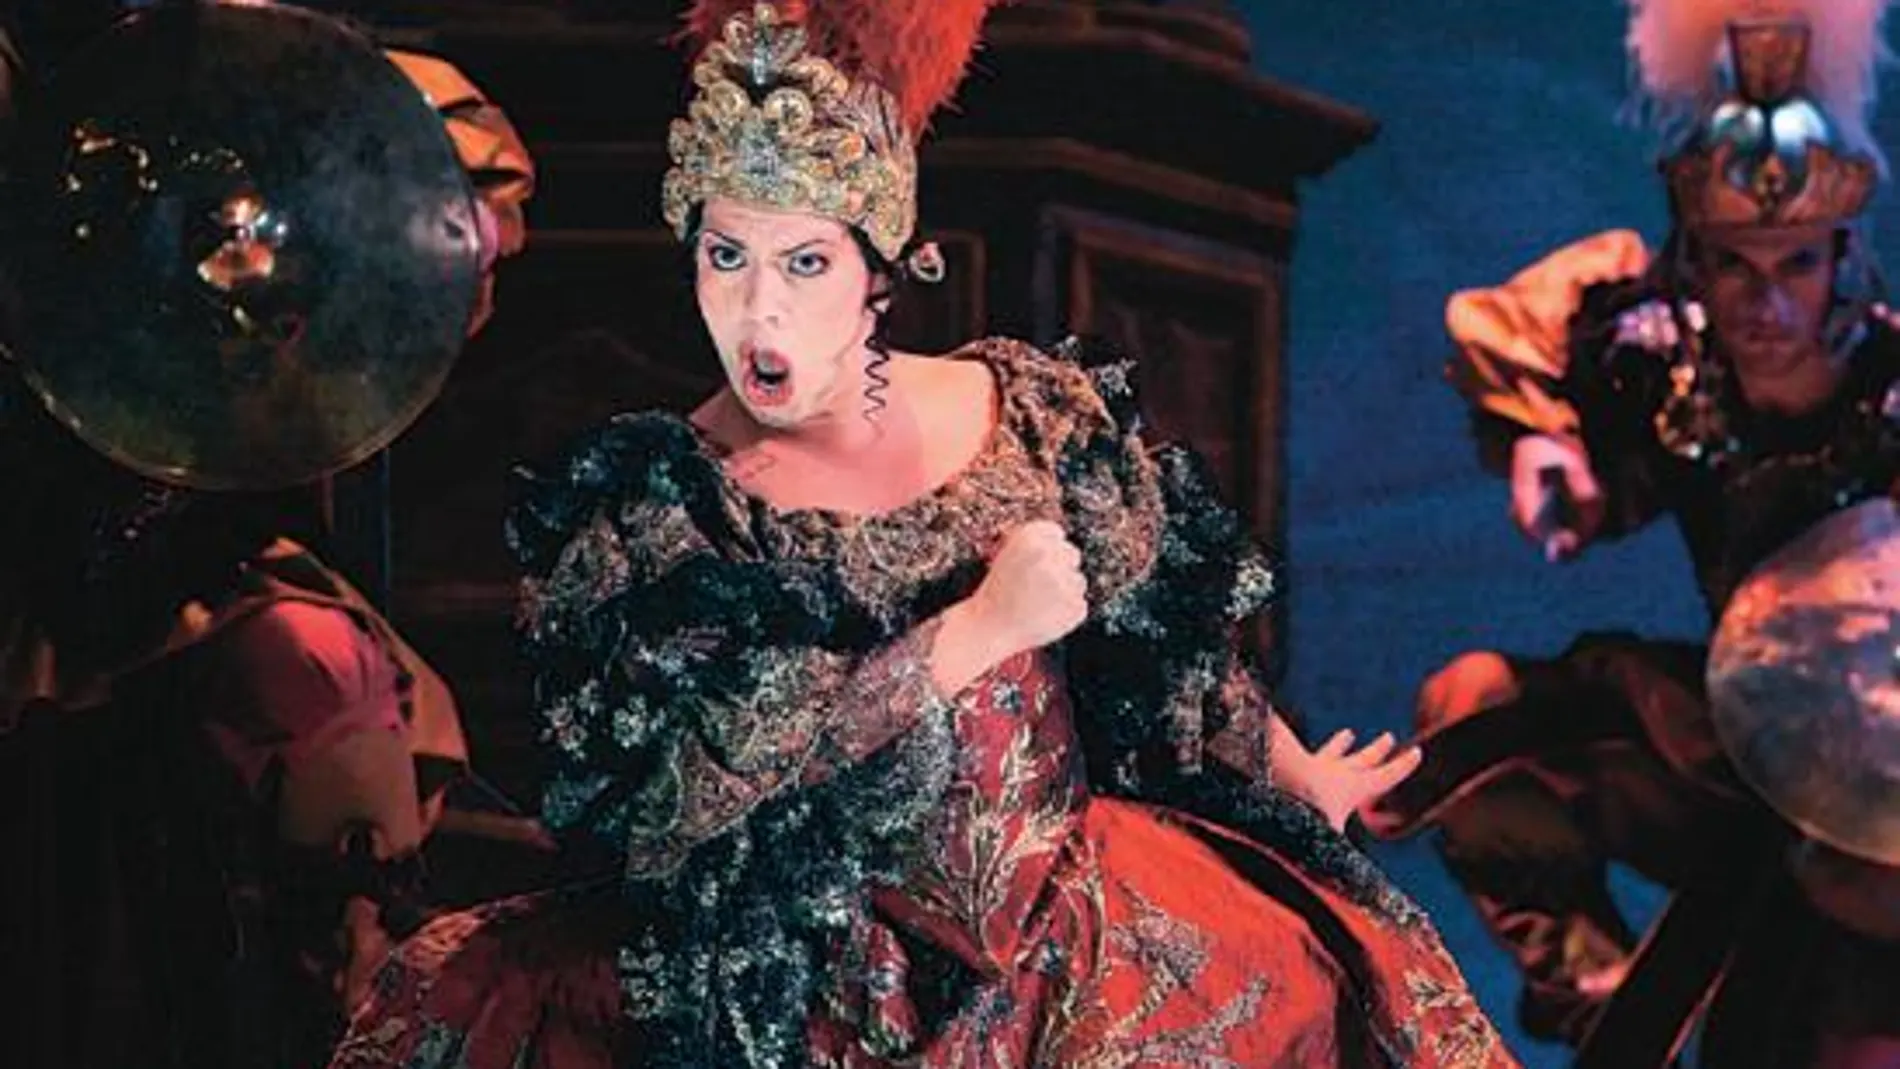 El impresionante vestuario es uno de los elementos clave de la puesta en escena de esta ópera